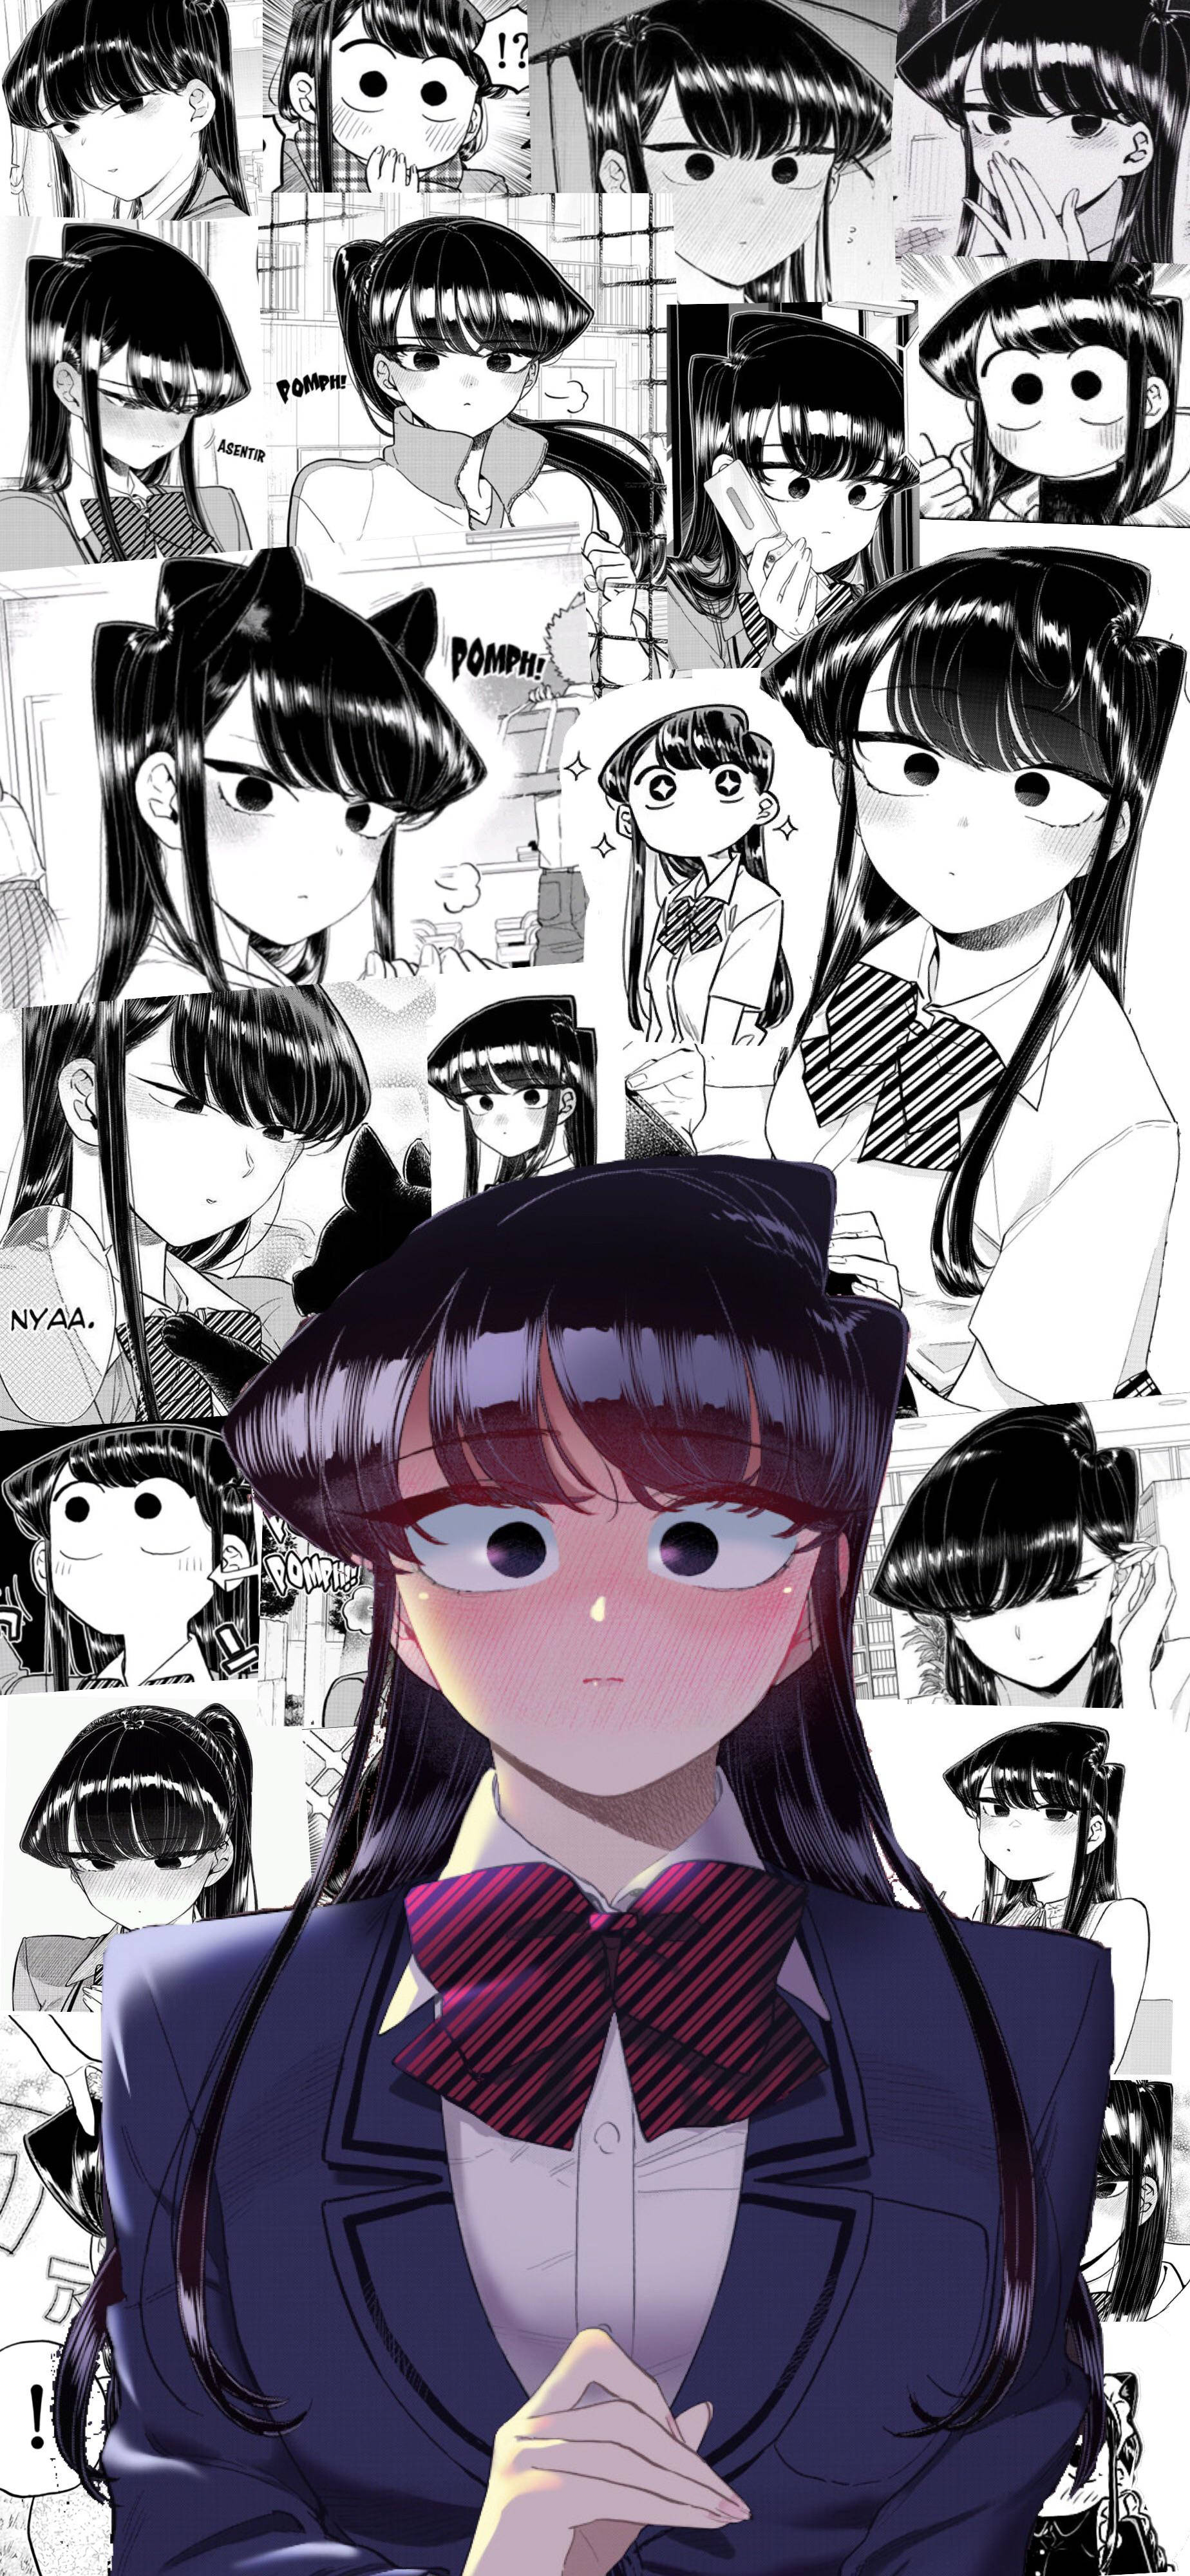 Komi San Comic Book Manga-karakterudtryks Desktop Tapet Wallpaper